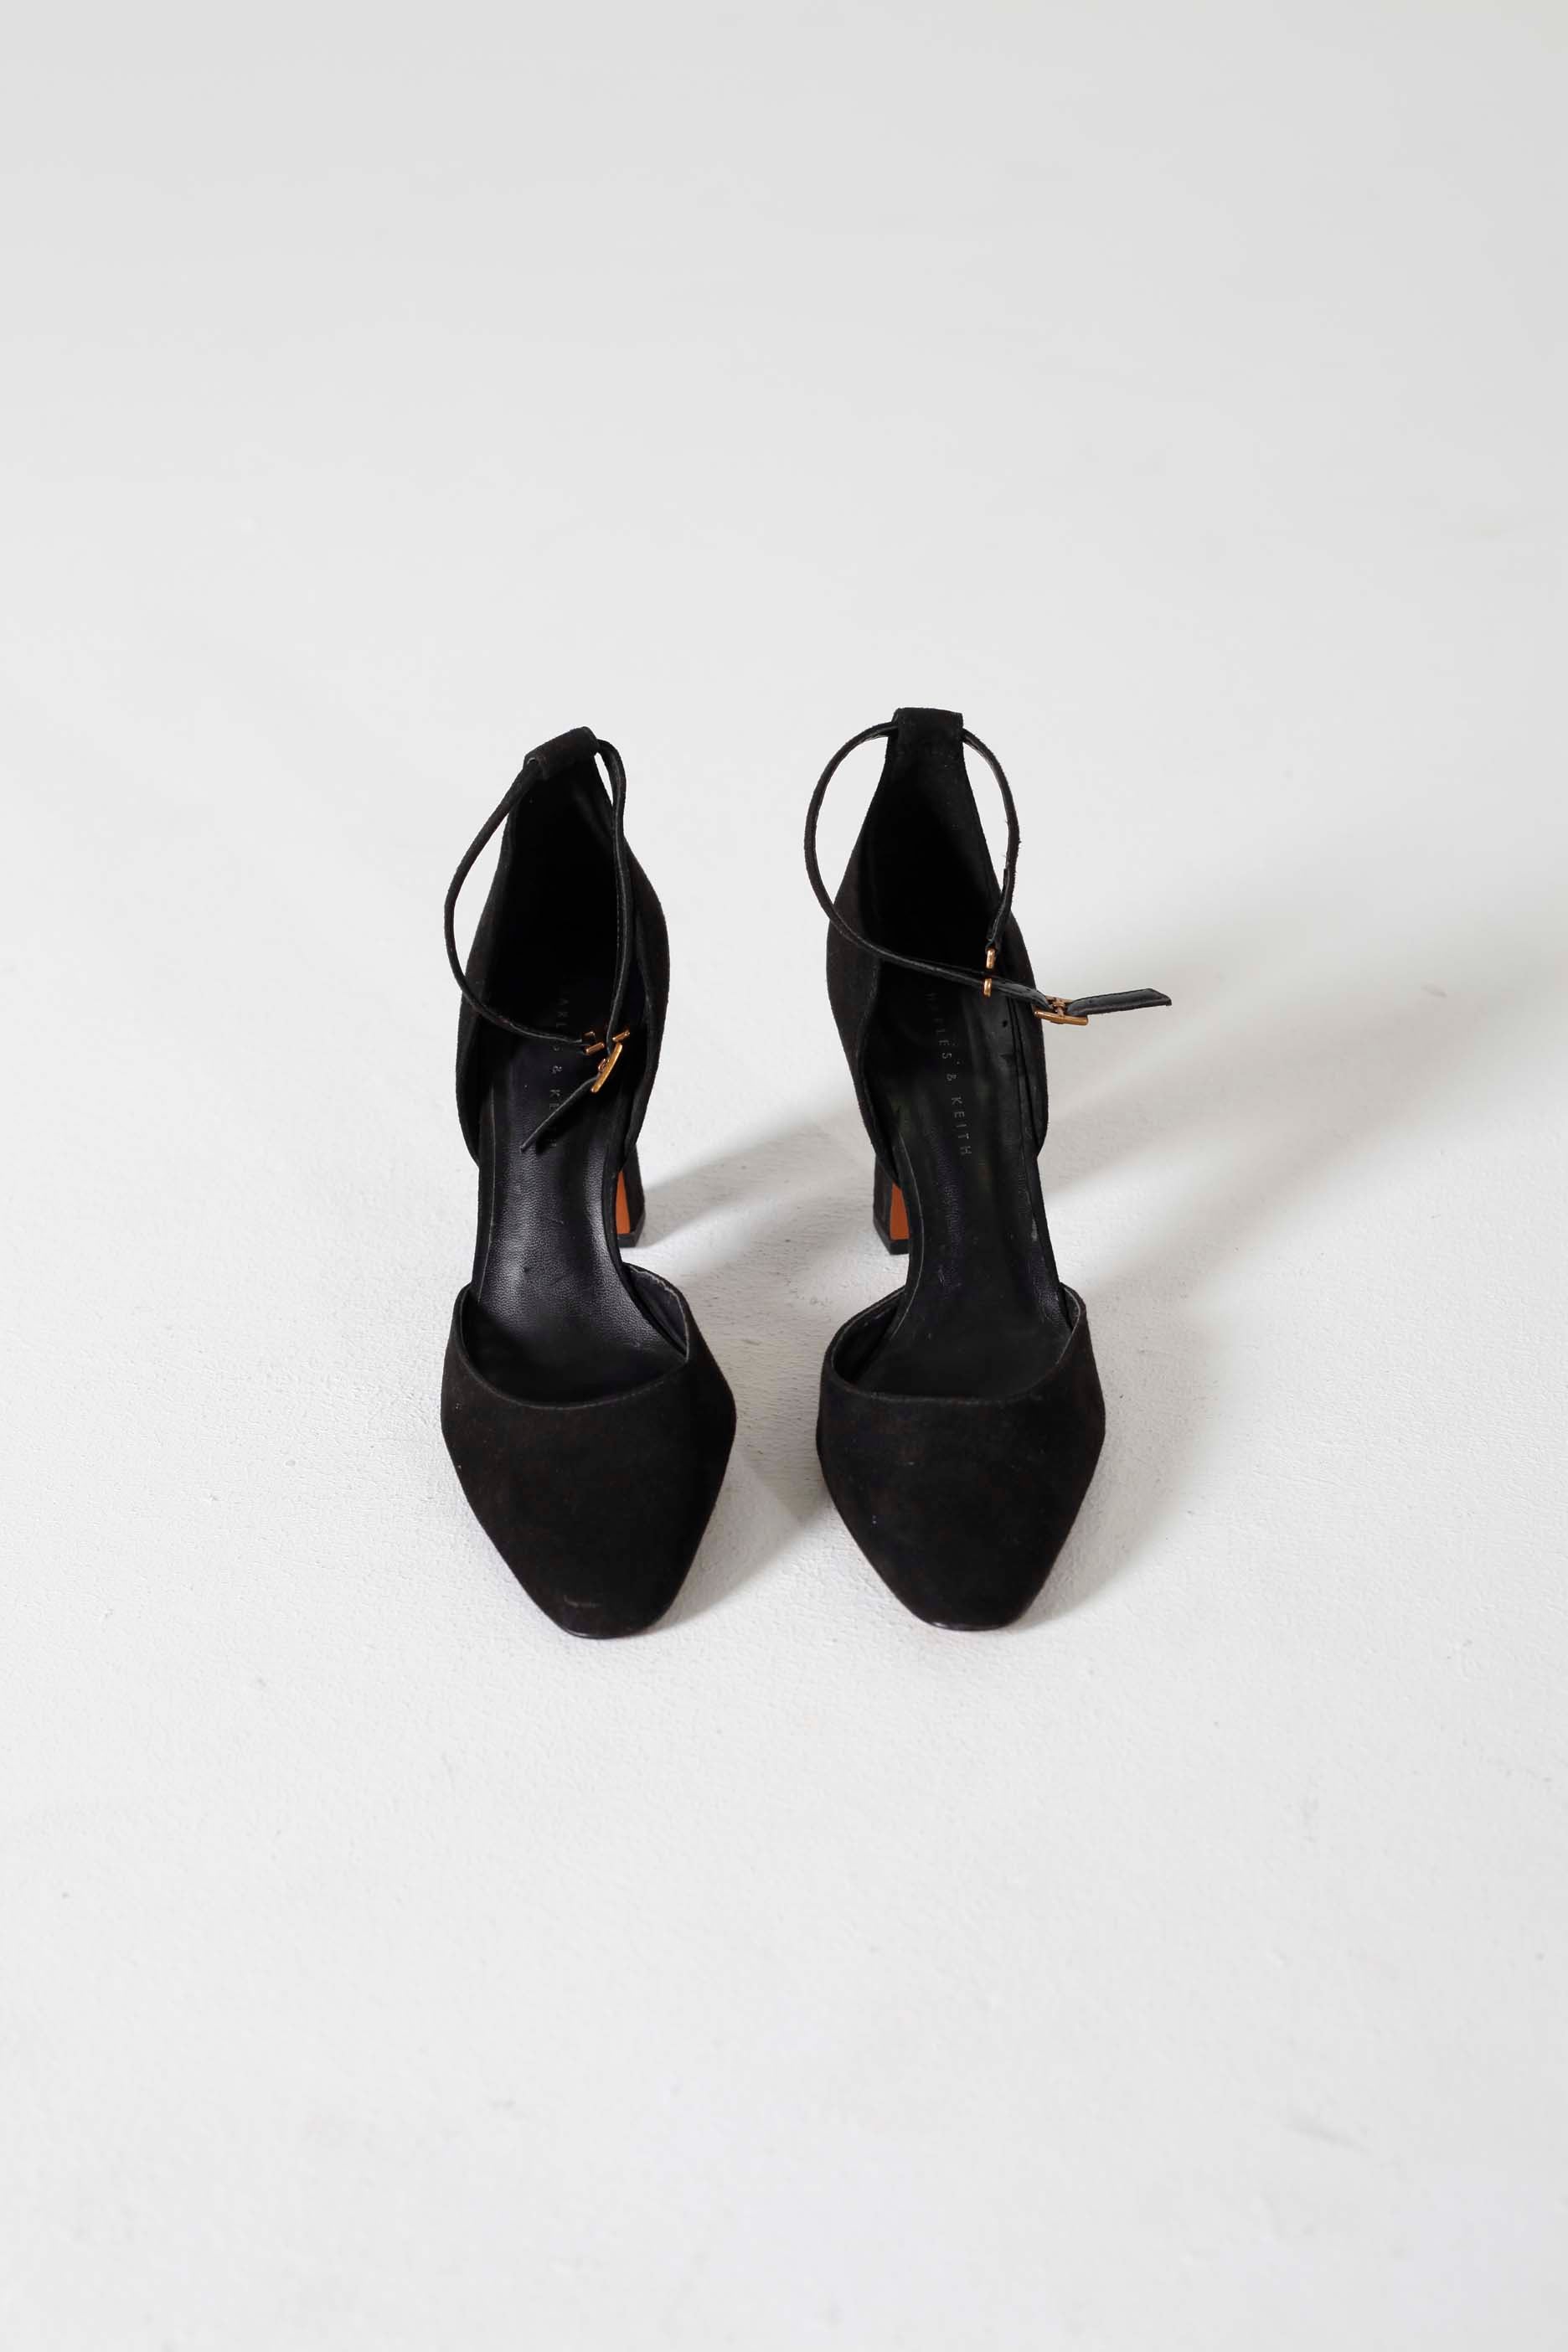 Black Velvet Heels (Eu38)